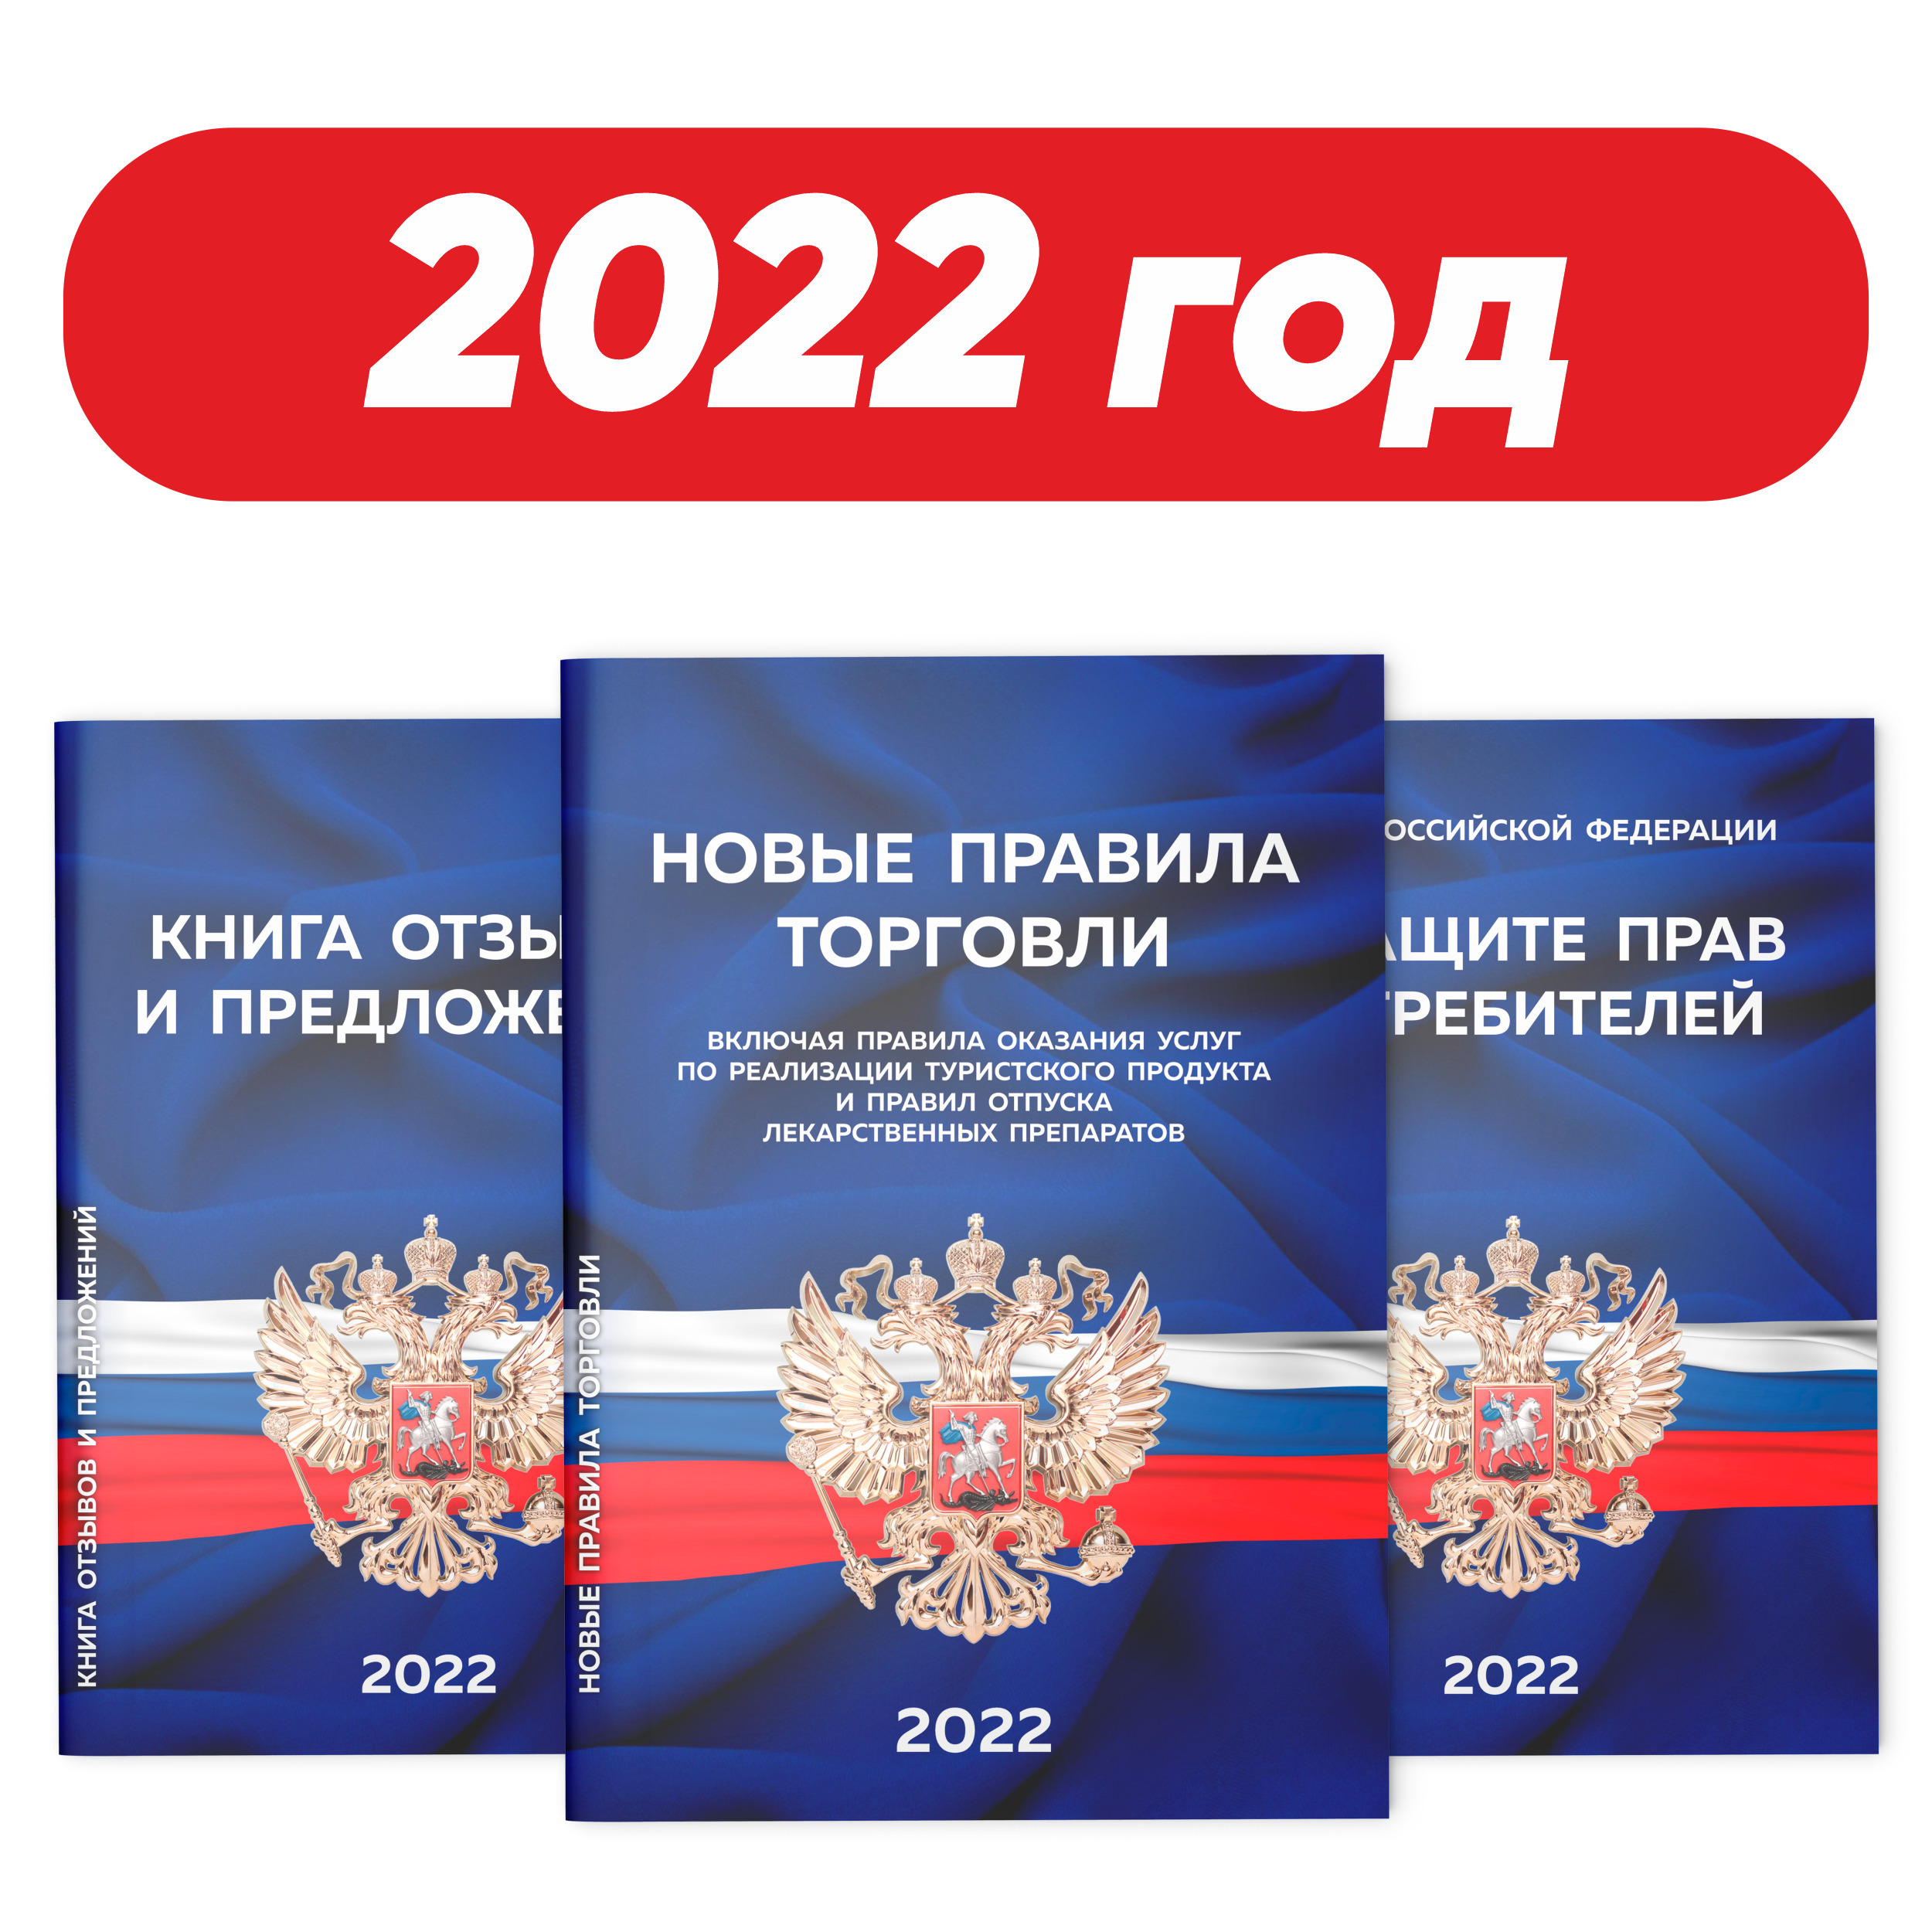 Правила торговли 2022